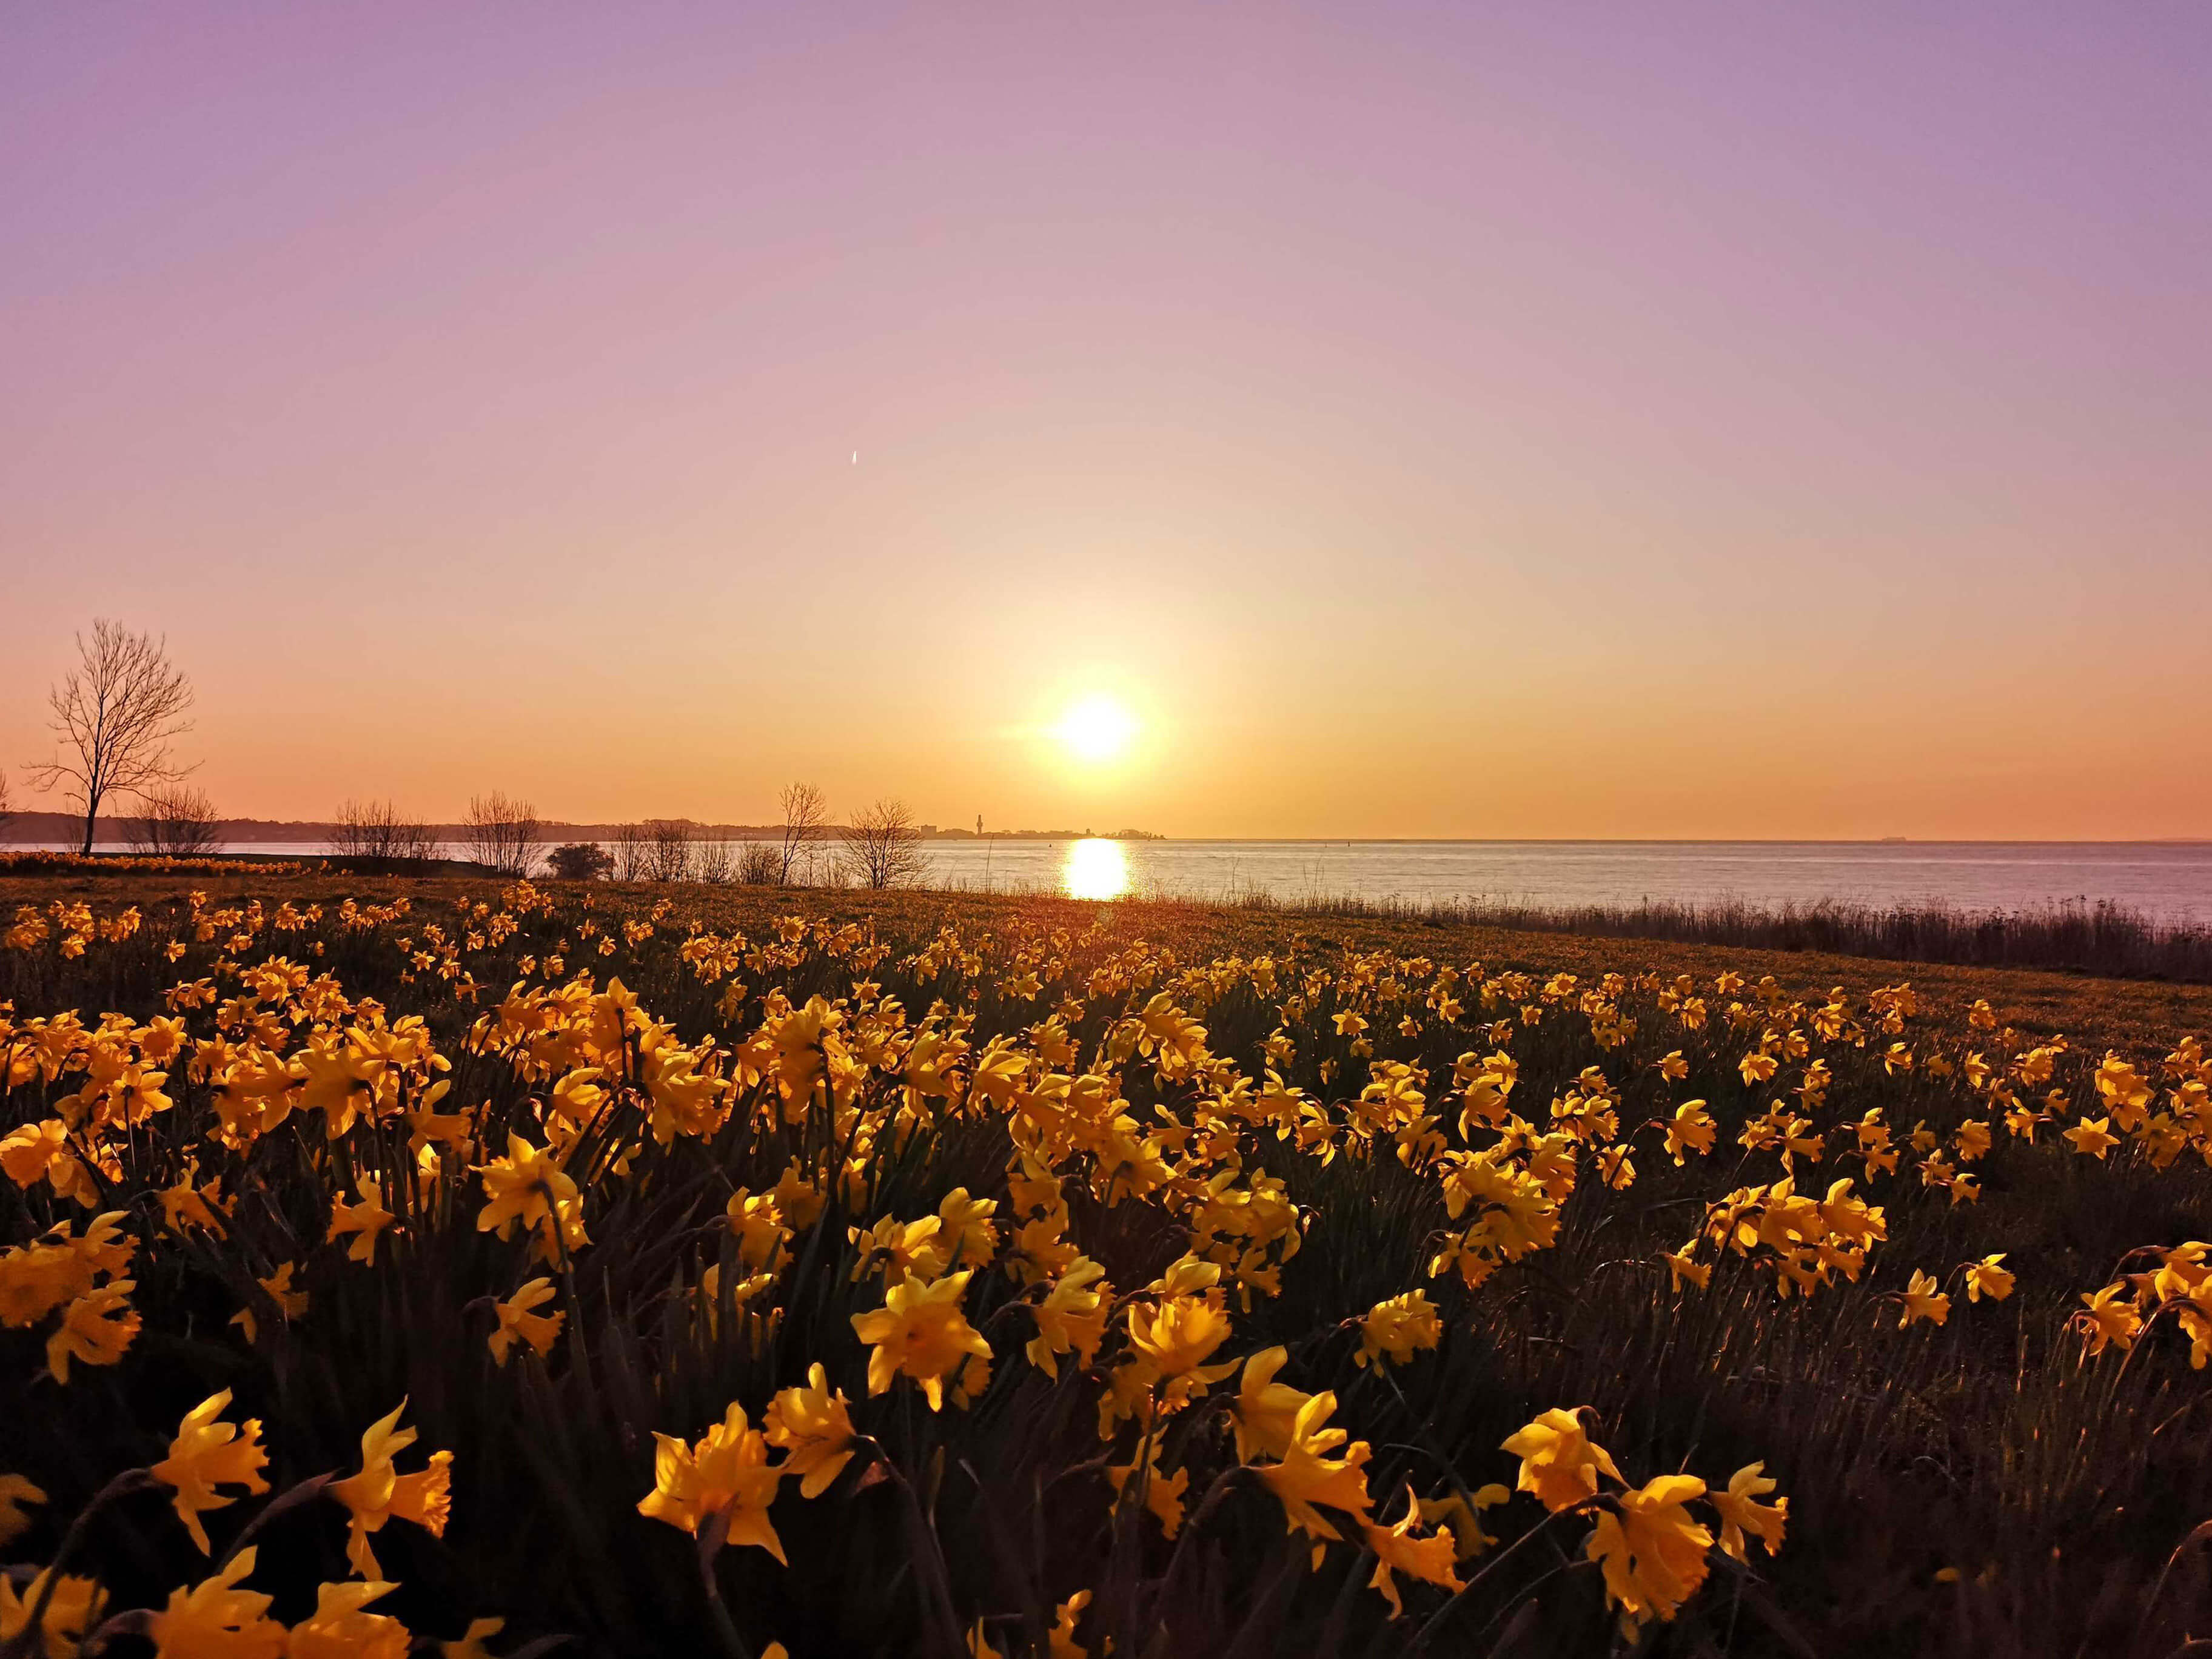 Ein idyllischer Sonnenaufgang über einem Meer mit einem Feld von blühenden gelben Narzissen im Vordergrund. Die tiefstehende Sonne taucht den Himmel in warme Orange- und Rosatöne und spiegelt sich glitzernd auf der Wasseroberfläche. Am Horizont sind Umris